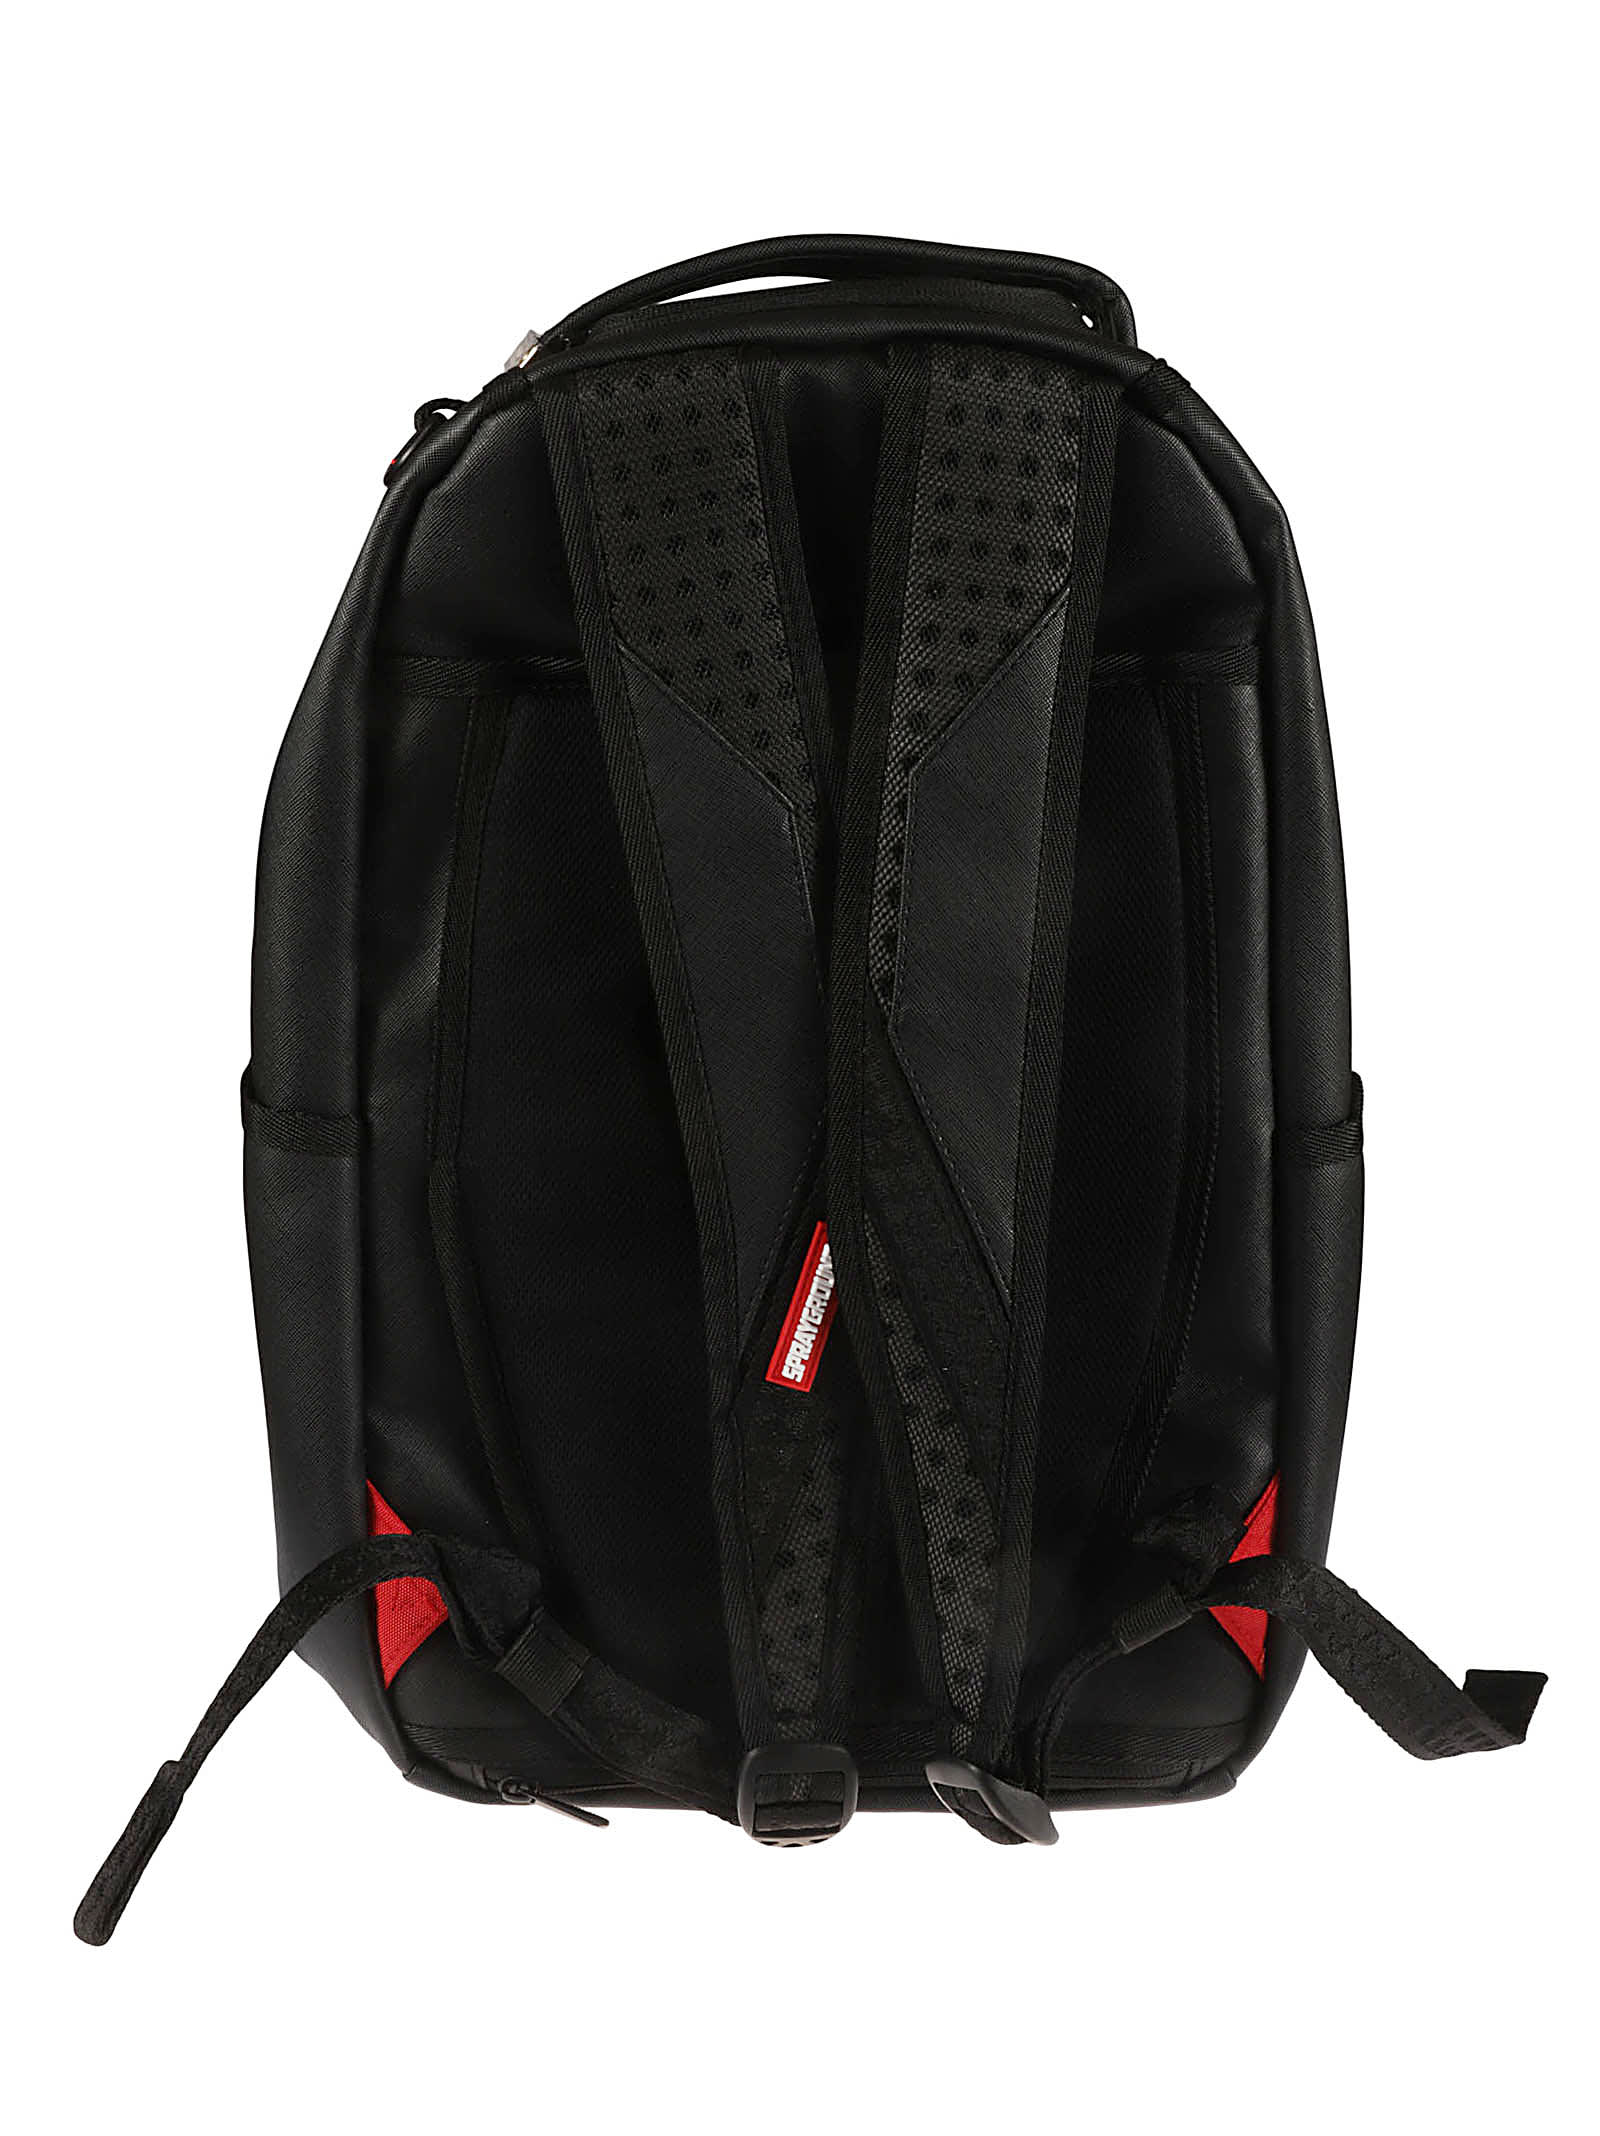 Sprayground Nylon Backpacks for Men